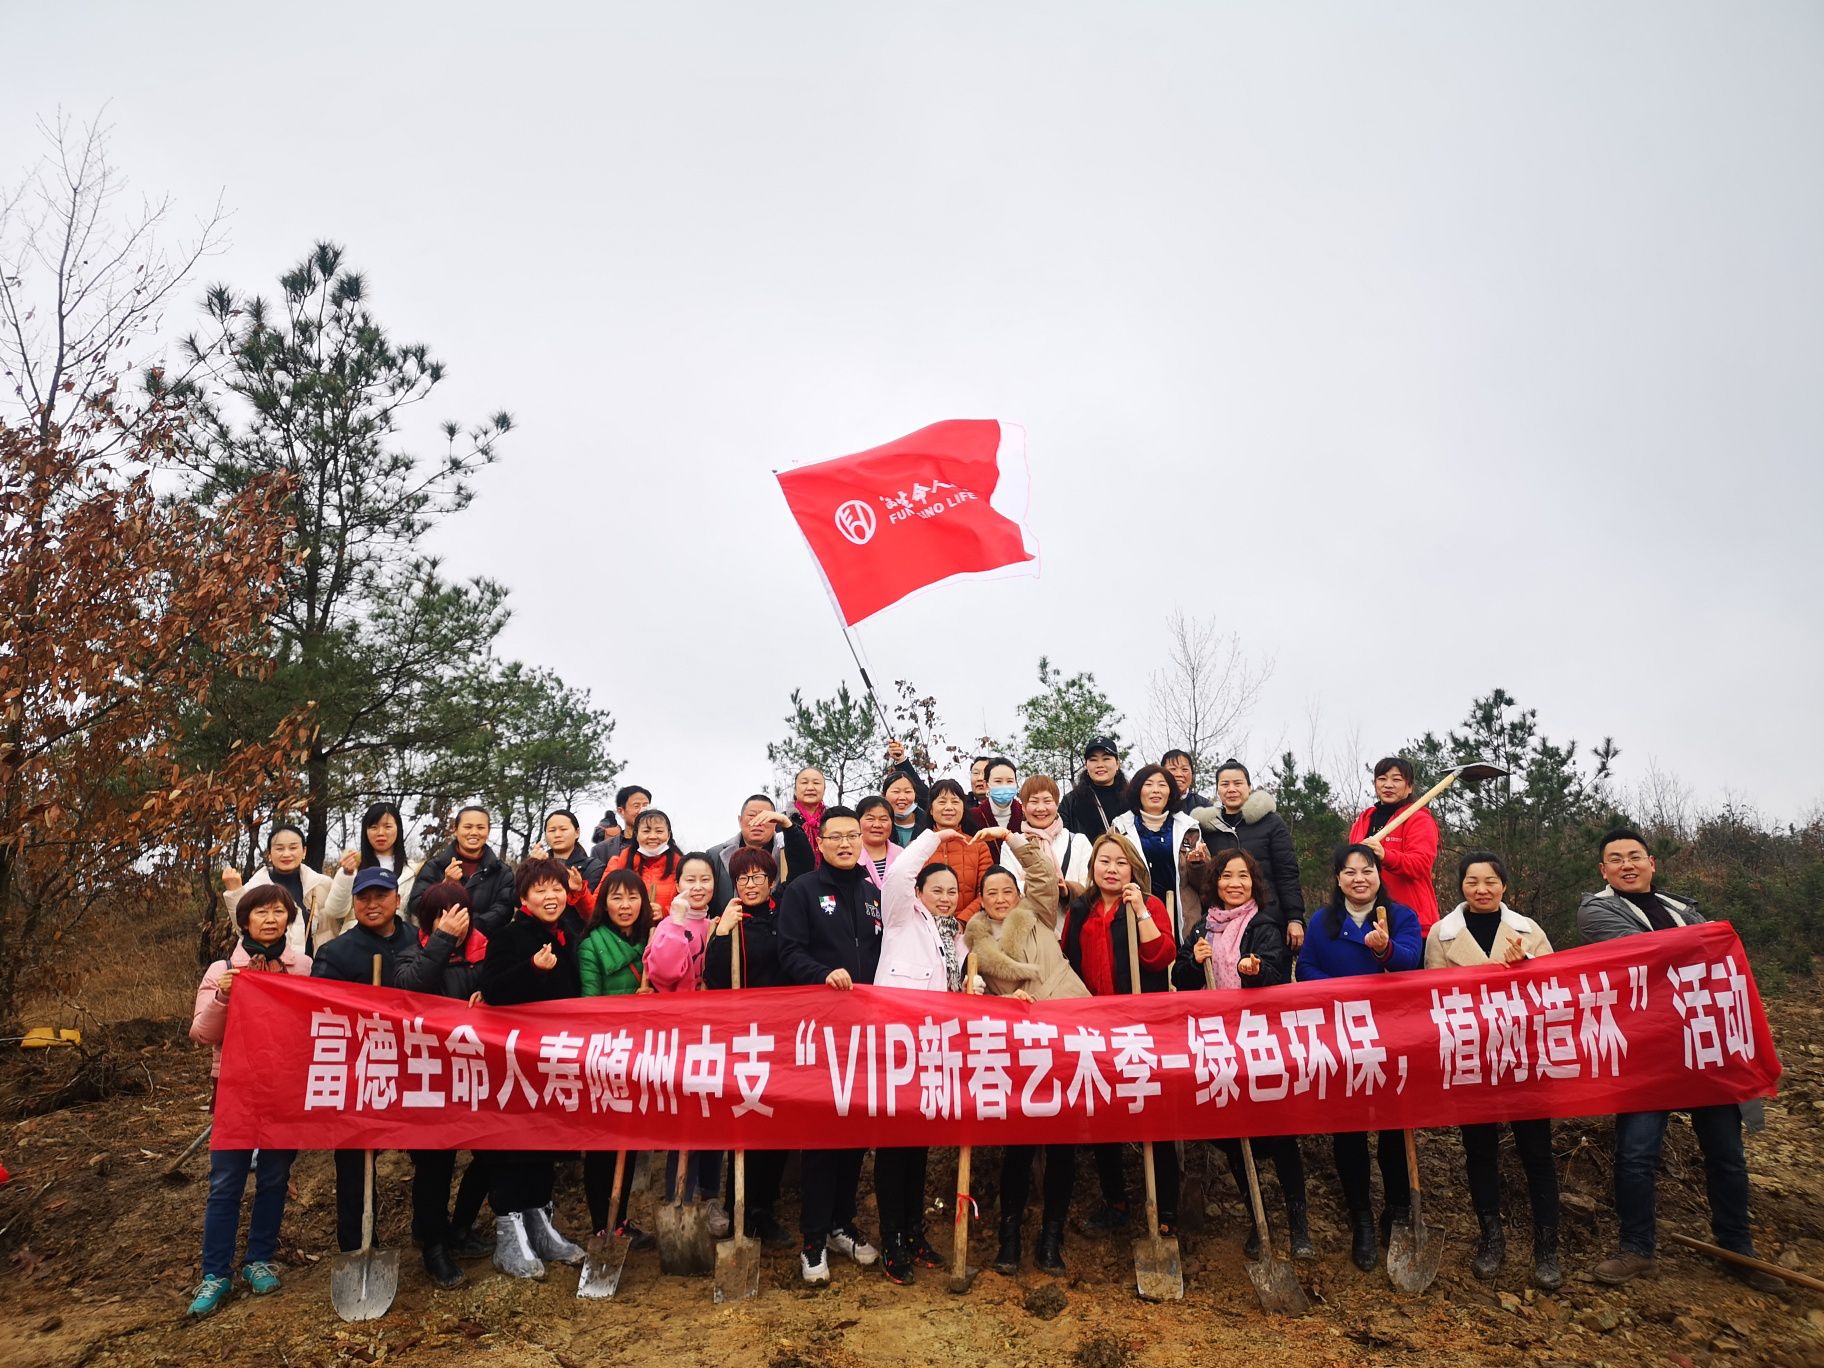 富德生命人寿随州中支组织开展“VIP新春艺术季——绿色环保 植树造林”活动